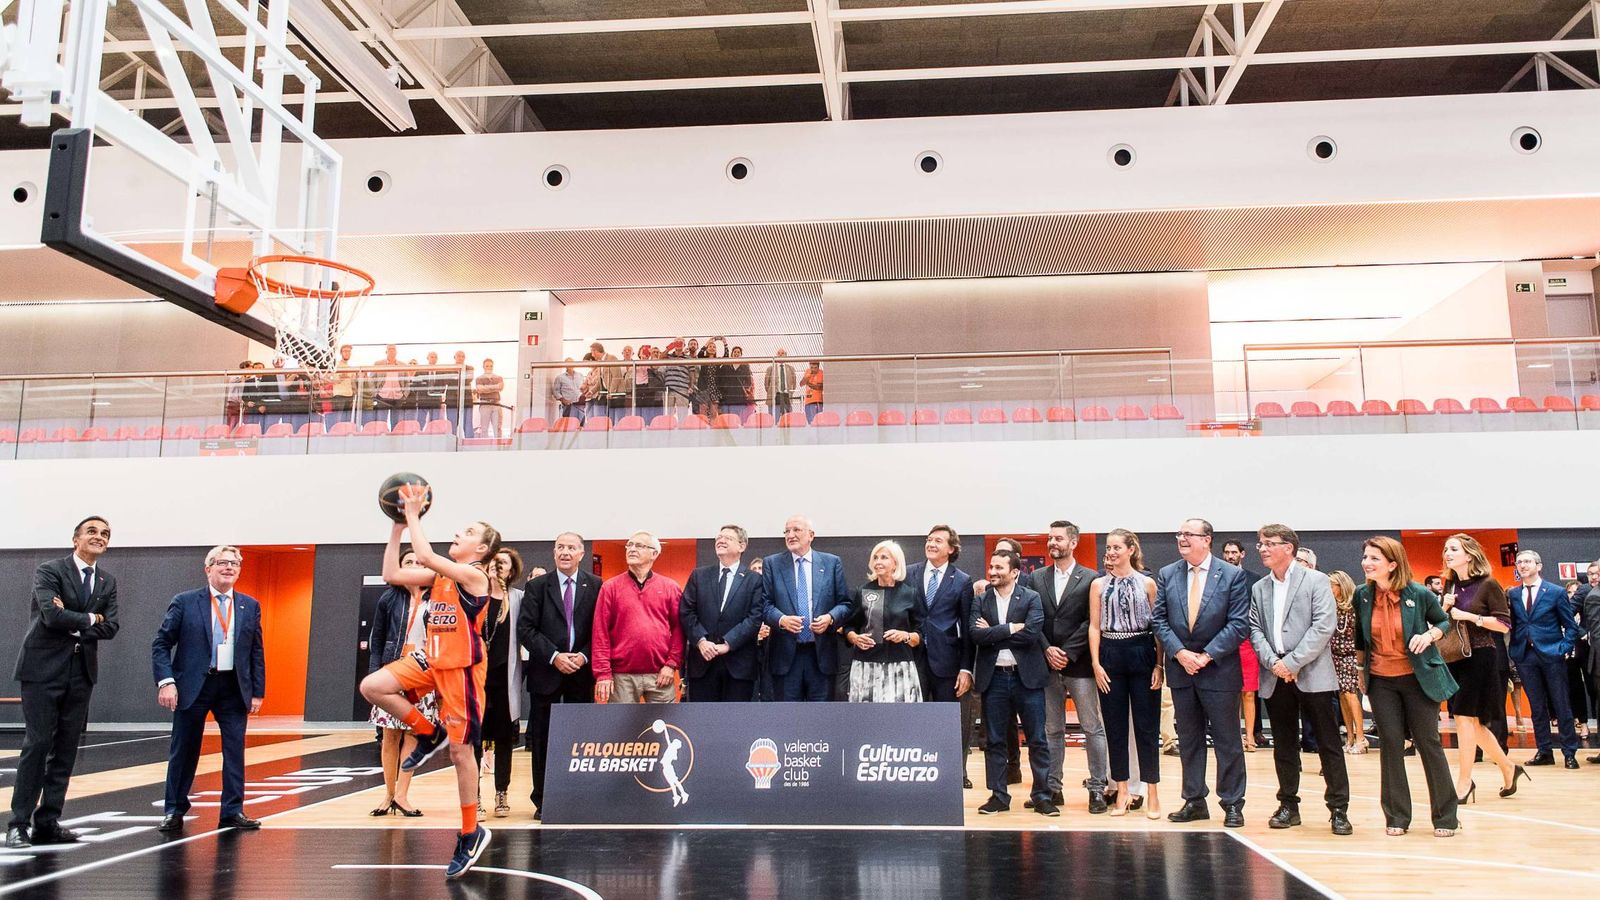 Foto: El Valencia Basket ha inaugurado la escuela L'Alqueria del Basket, que Juan Roig ha financiado con 18 millones de euros. (Miguel Ángel Polo)